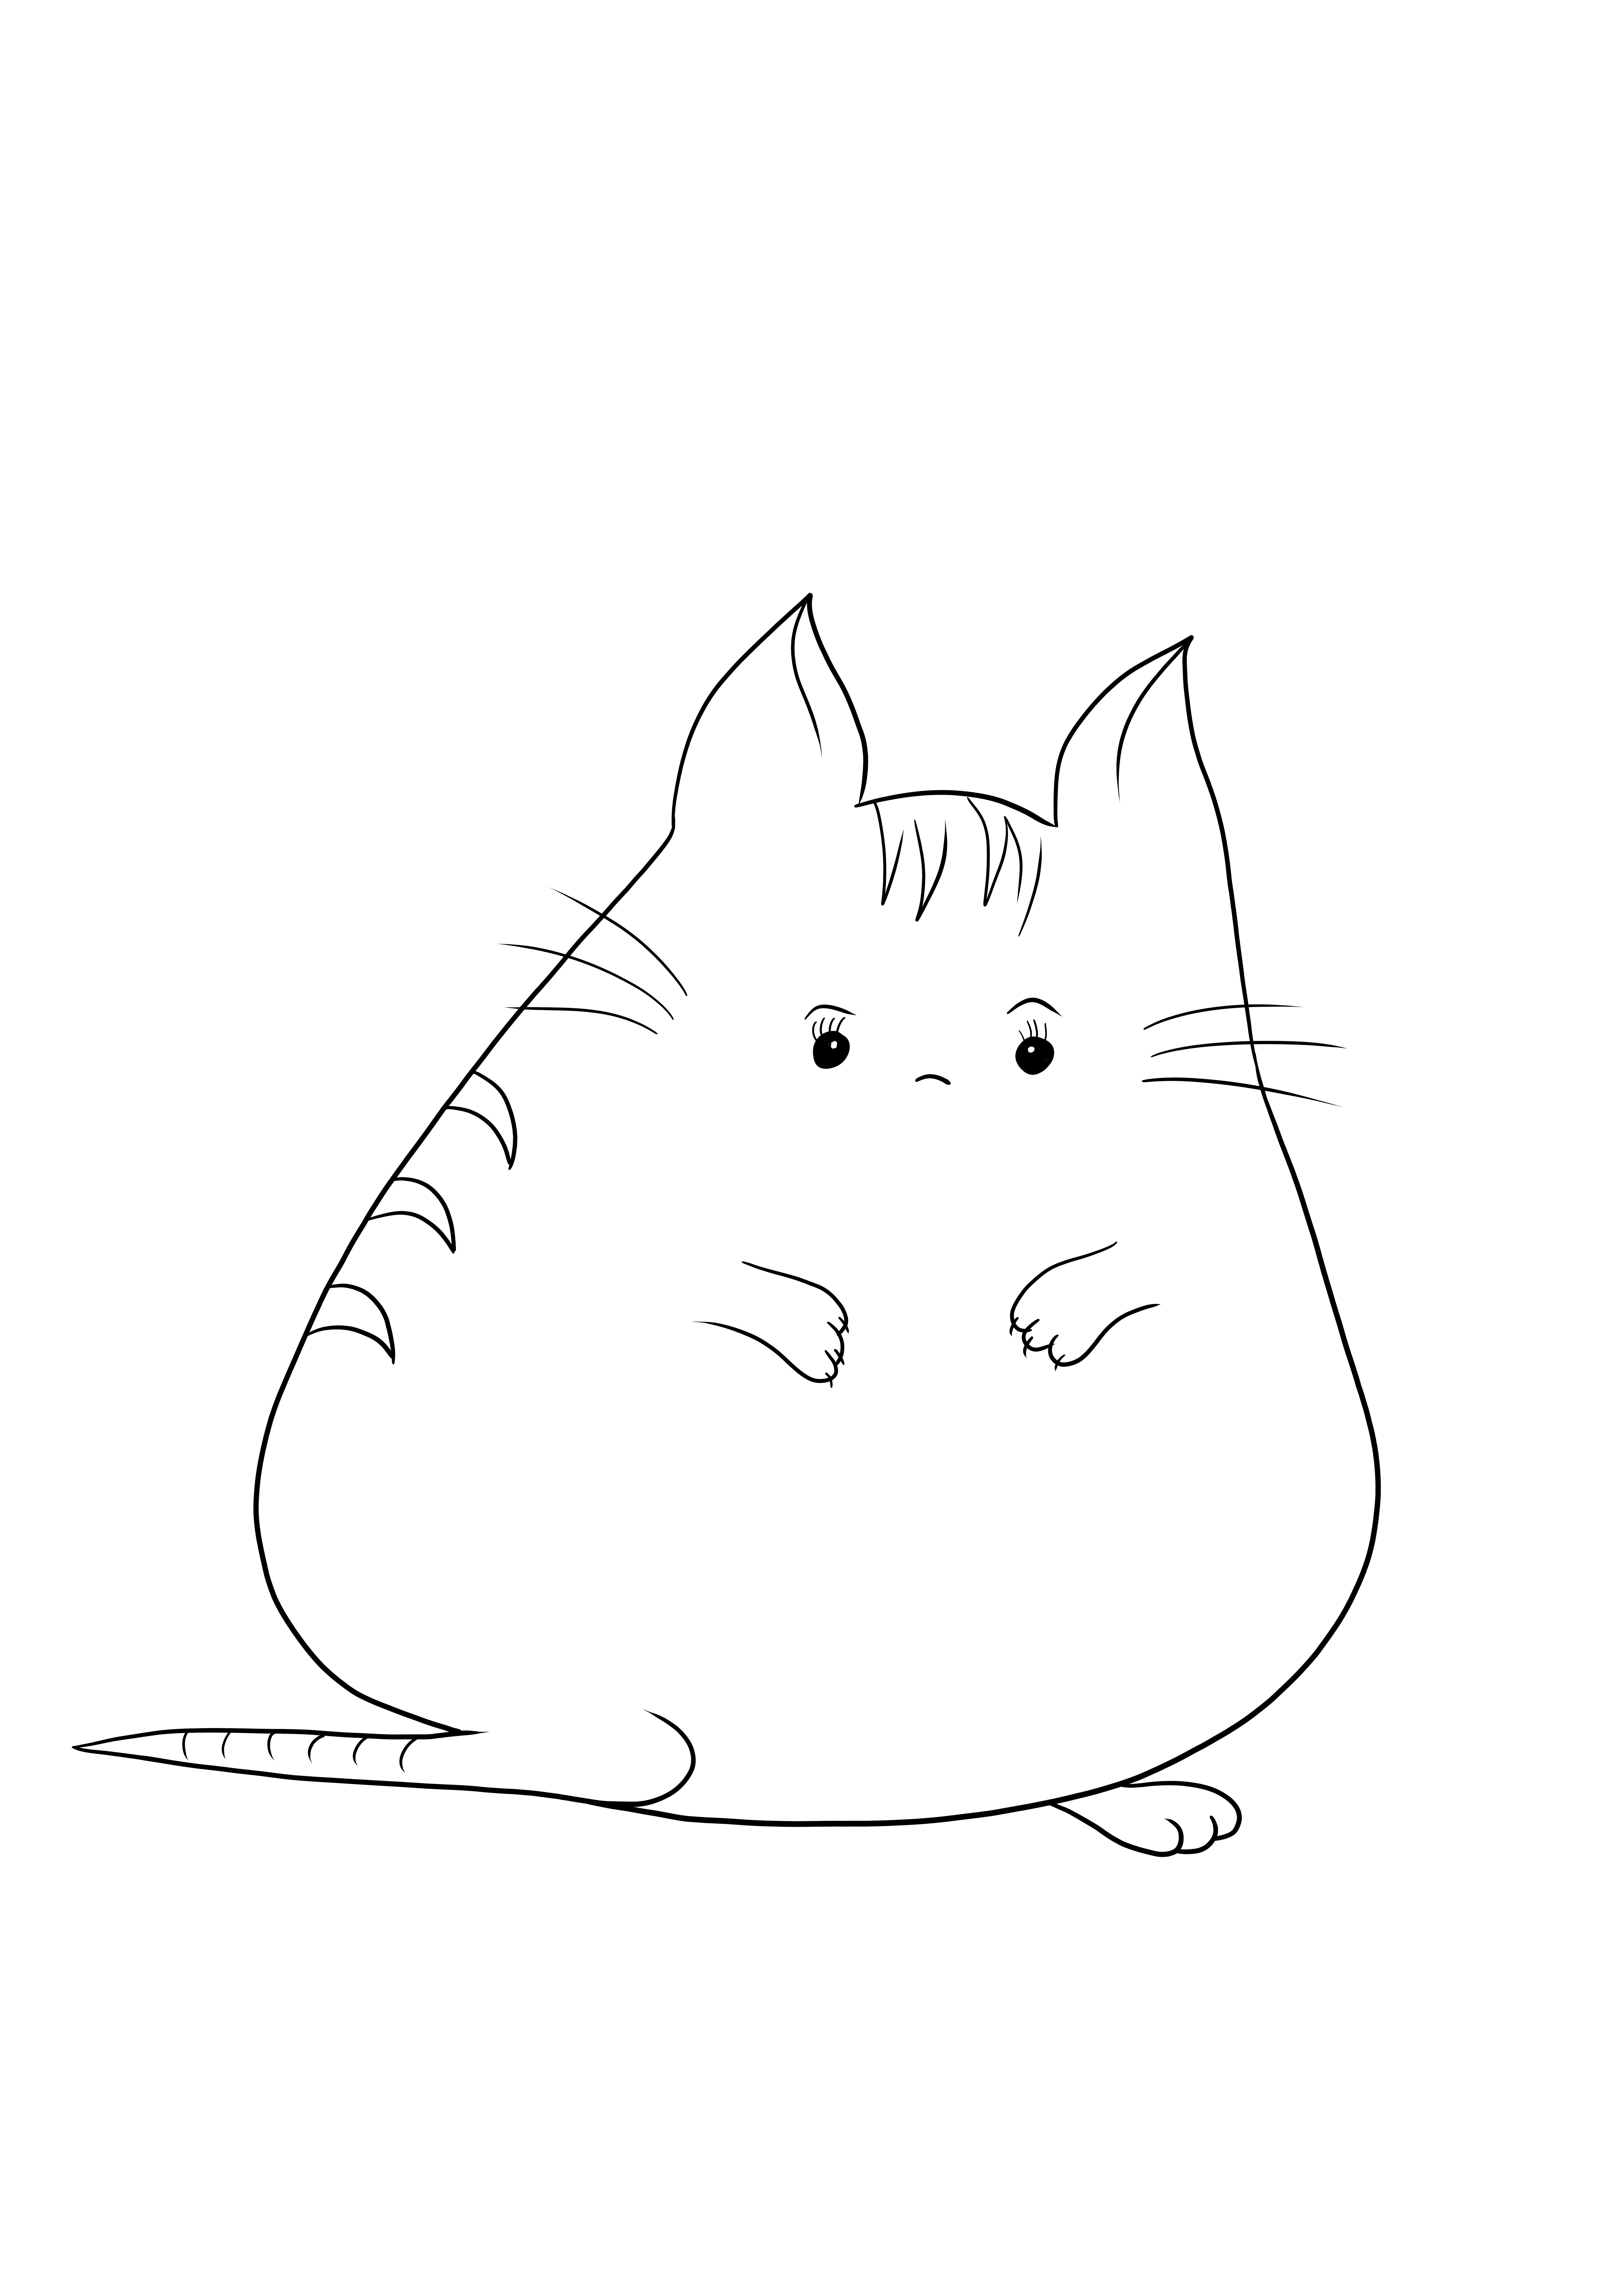 Kucing gemuk lucu untuk dicetak dan diwarnai secara gratis